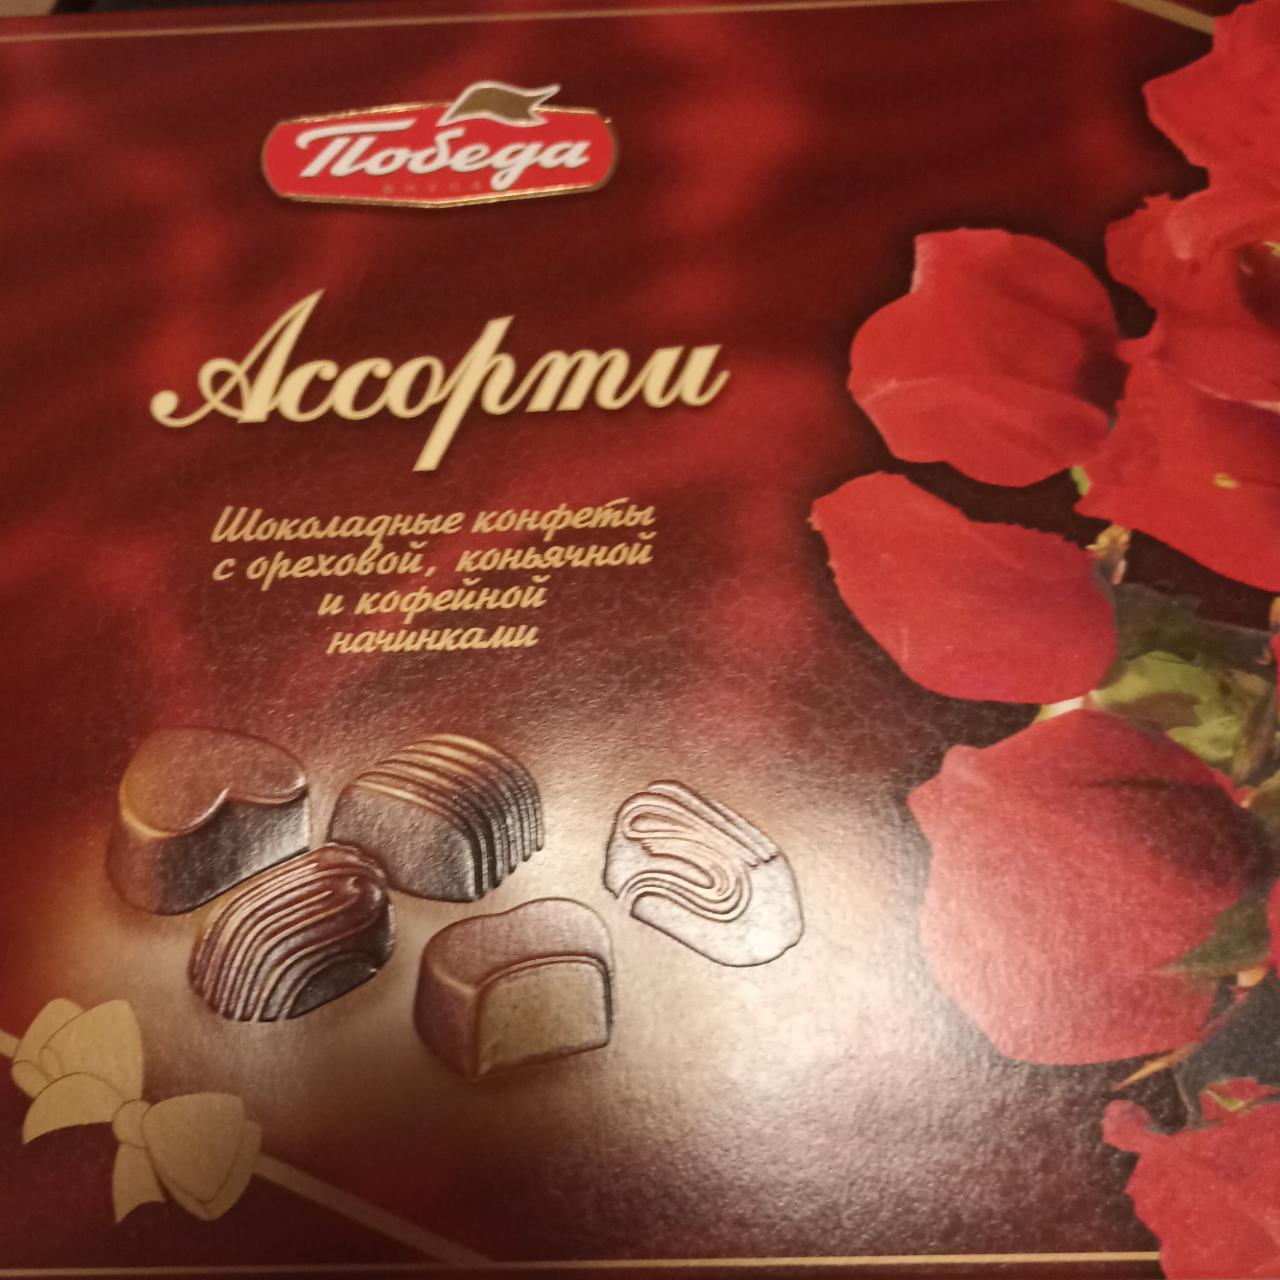 Фото - Шоколадные конфеты Ассорти Победа вкуса